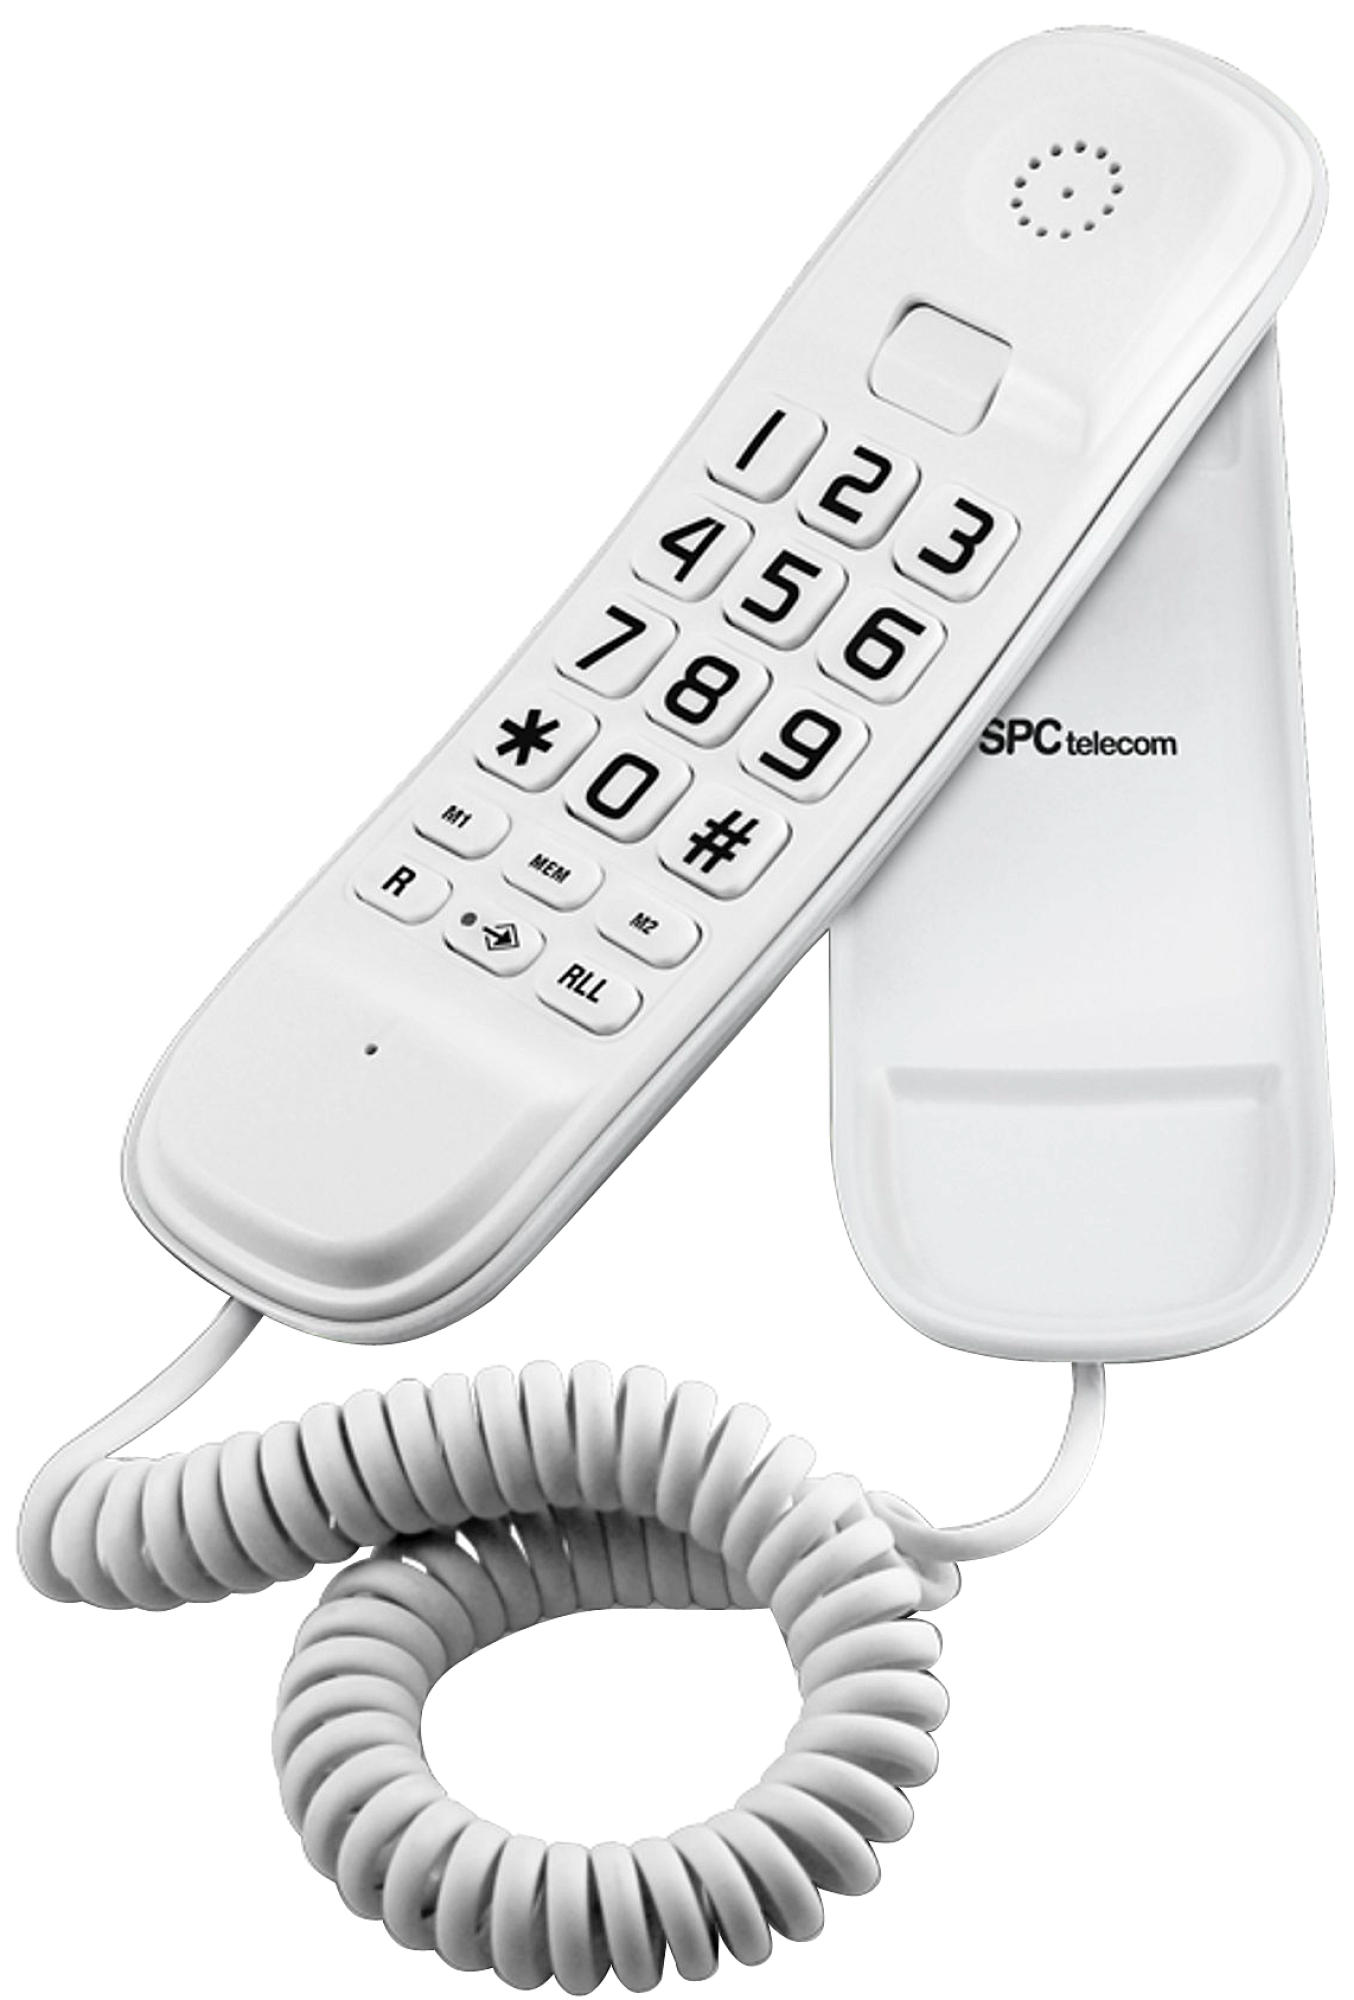 Fijo Telecom 3601 blanco 3601v con teclas grandes original lite color sobremesa y mural de usar 2 memorias directas rellamada al marcado mute 10 3601b telefone